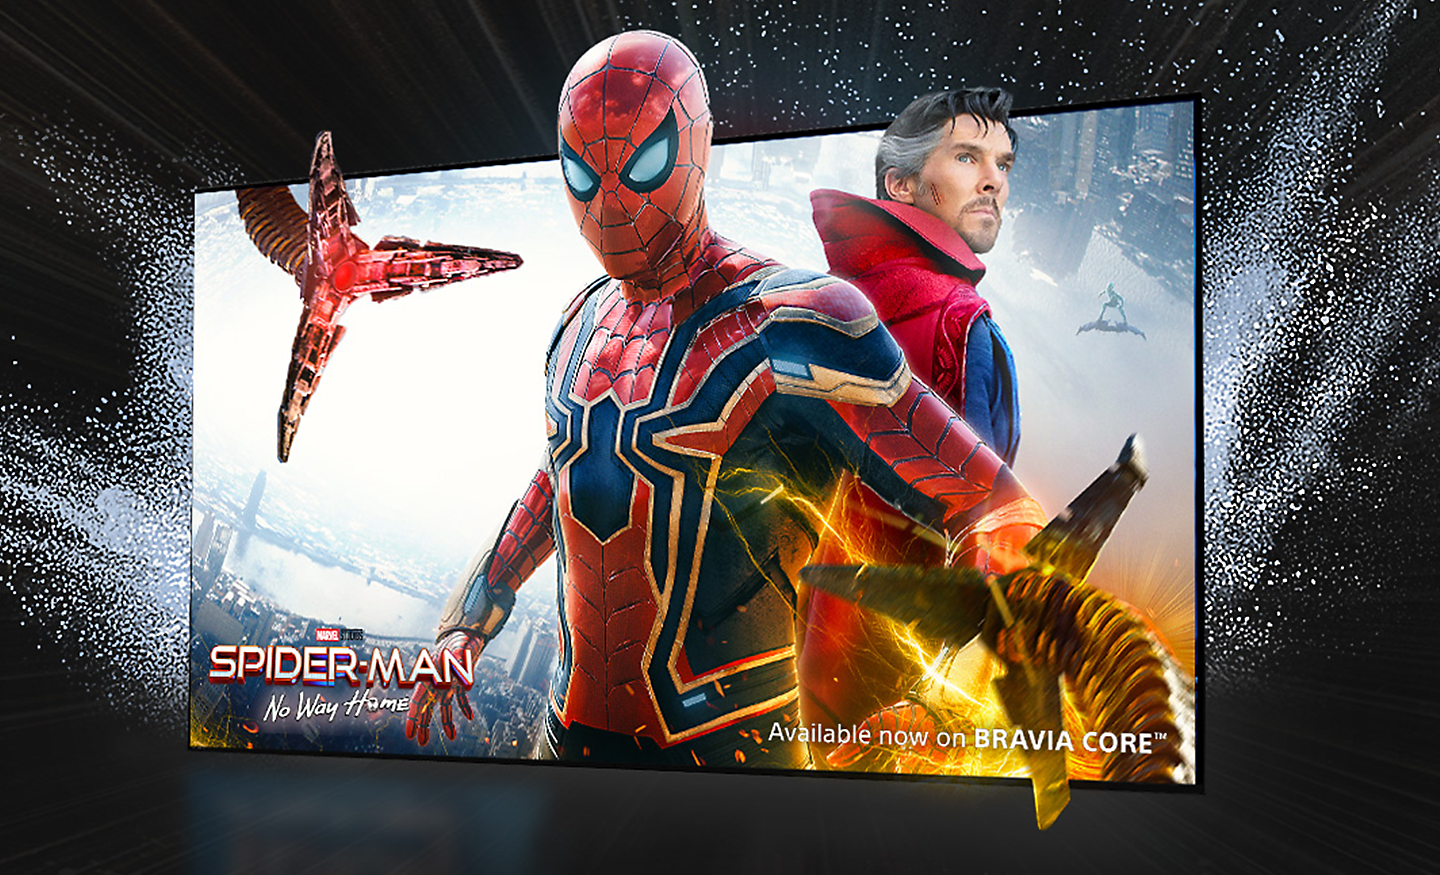 Schermo TV che mostra il film SPIDER-MAN No Way Home con Spider-man che fuoriesce dallo schermo